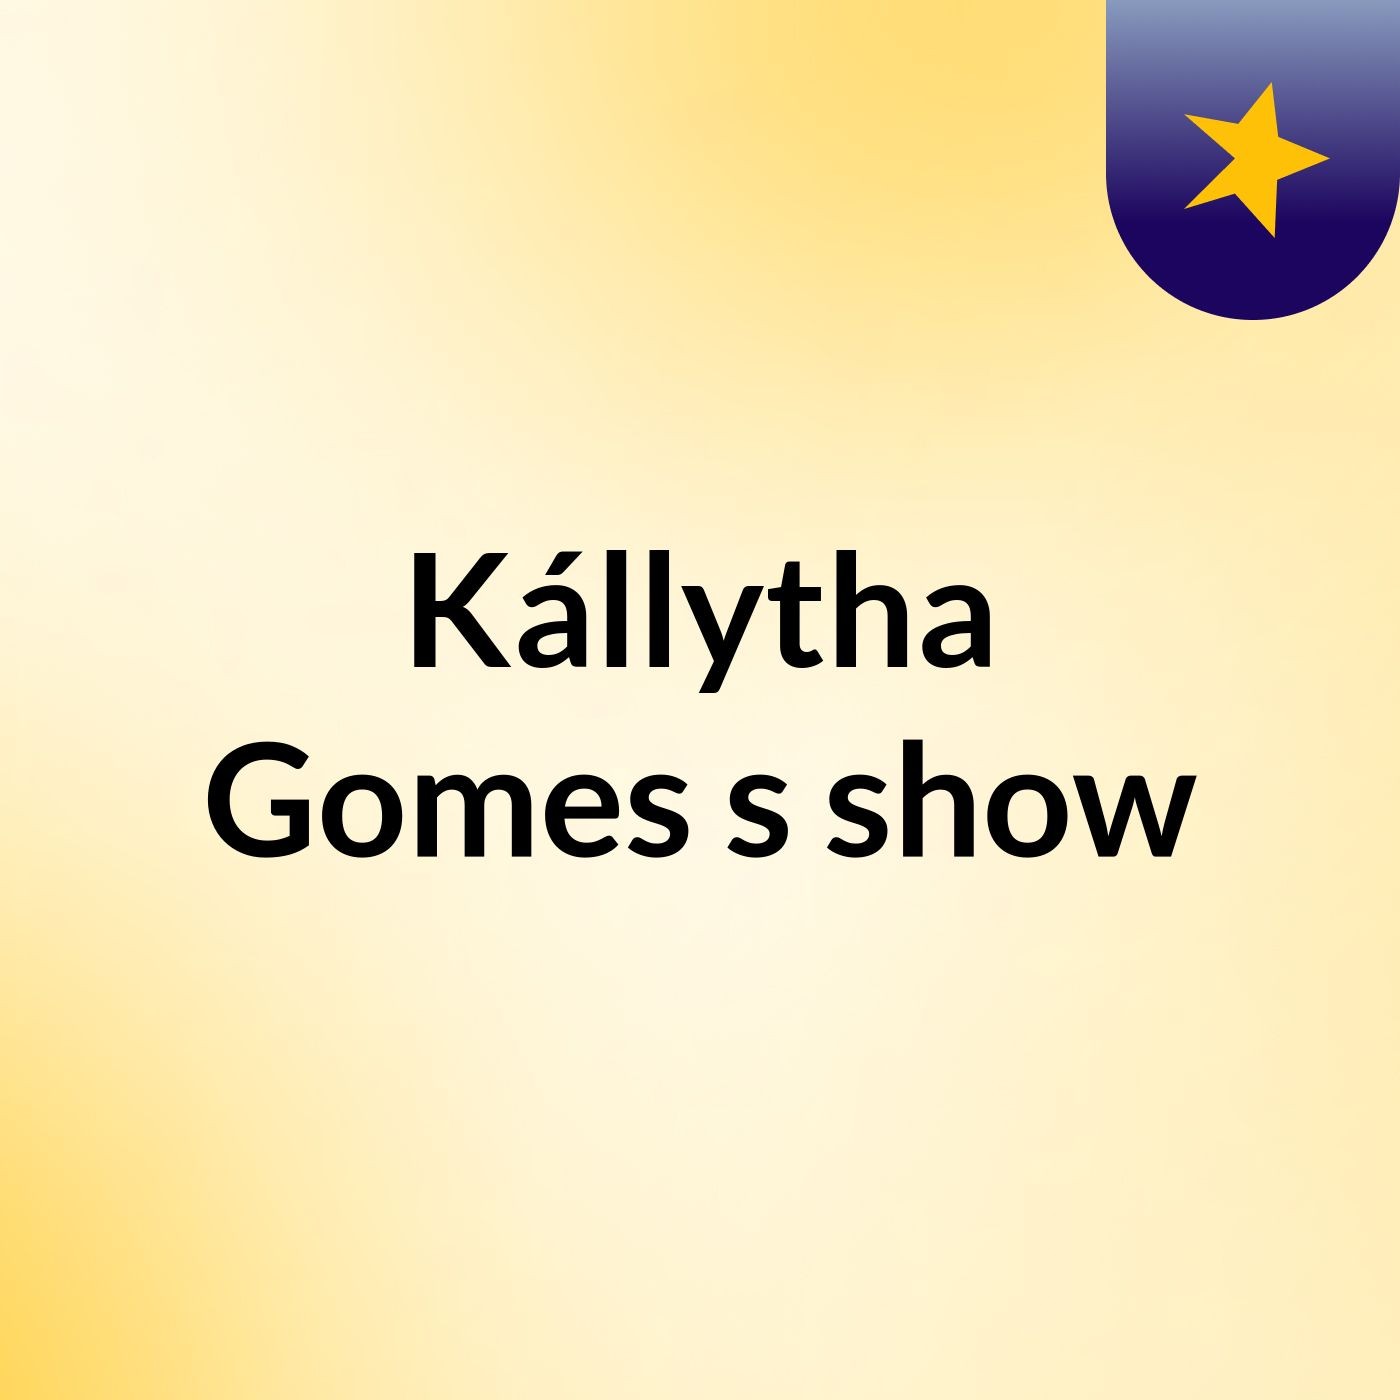 Kállytha Gomes's show